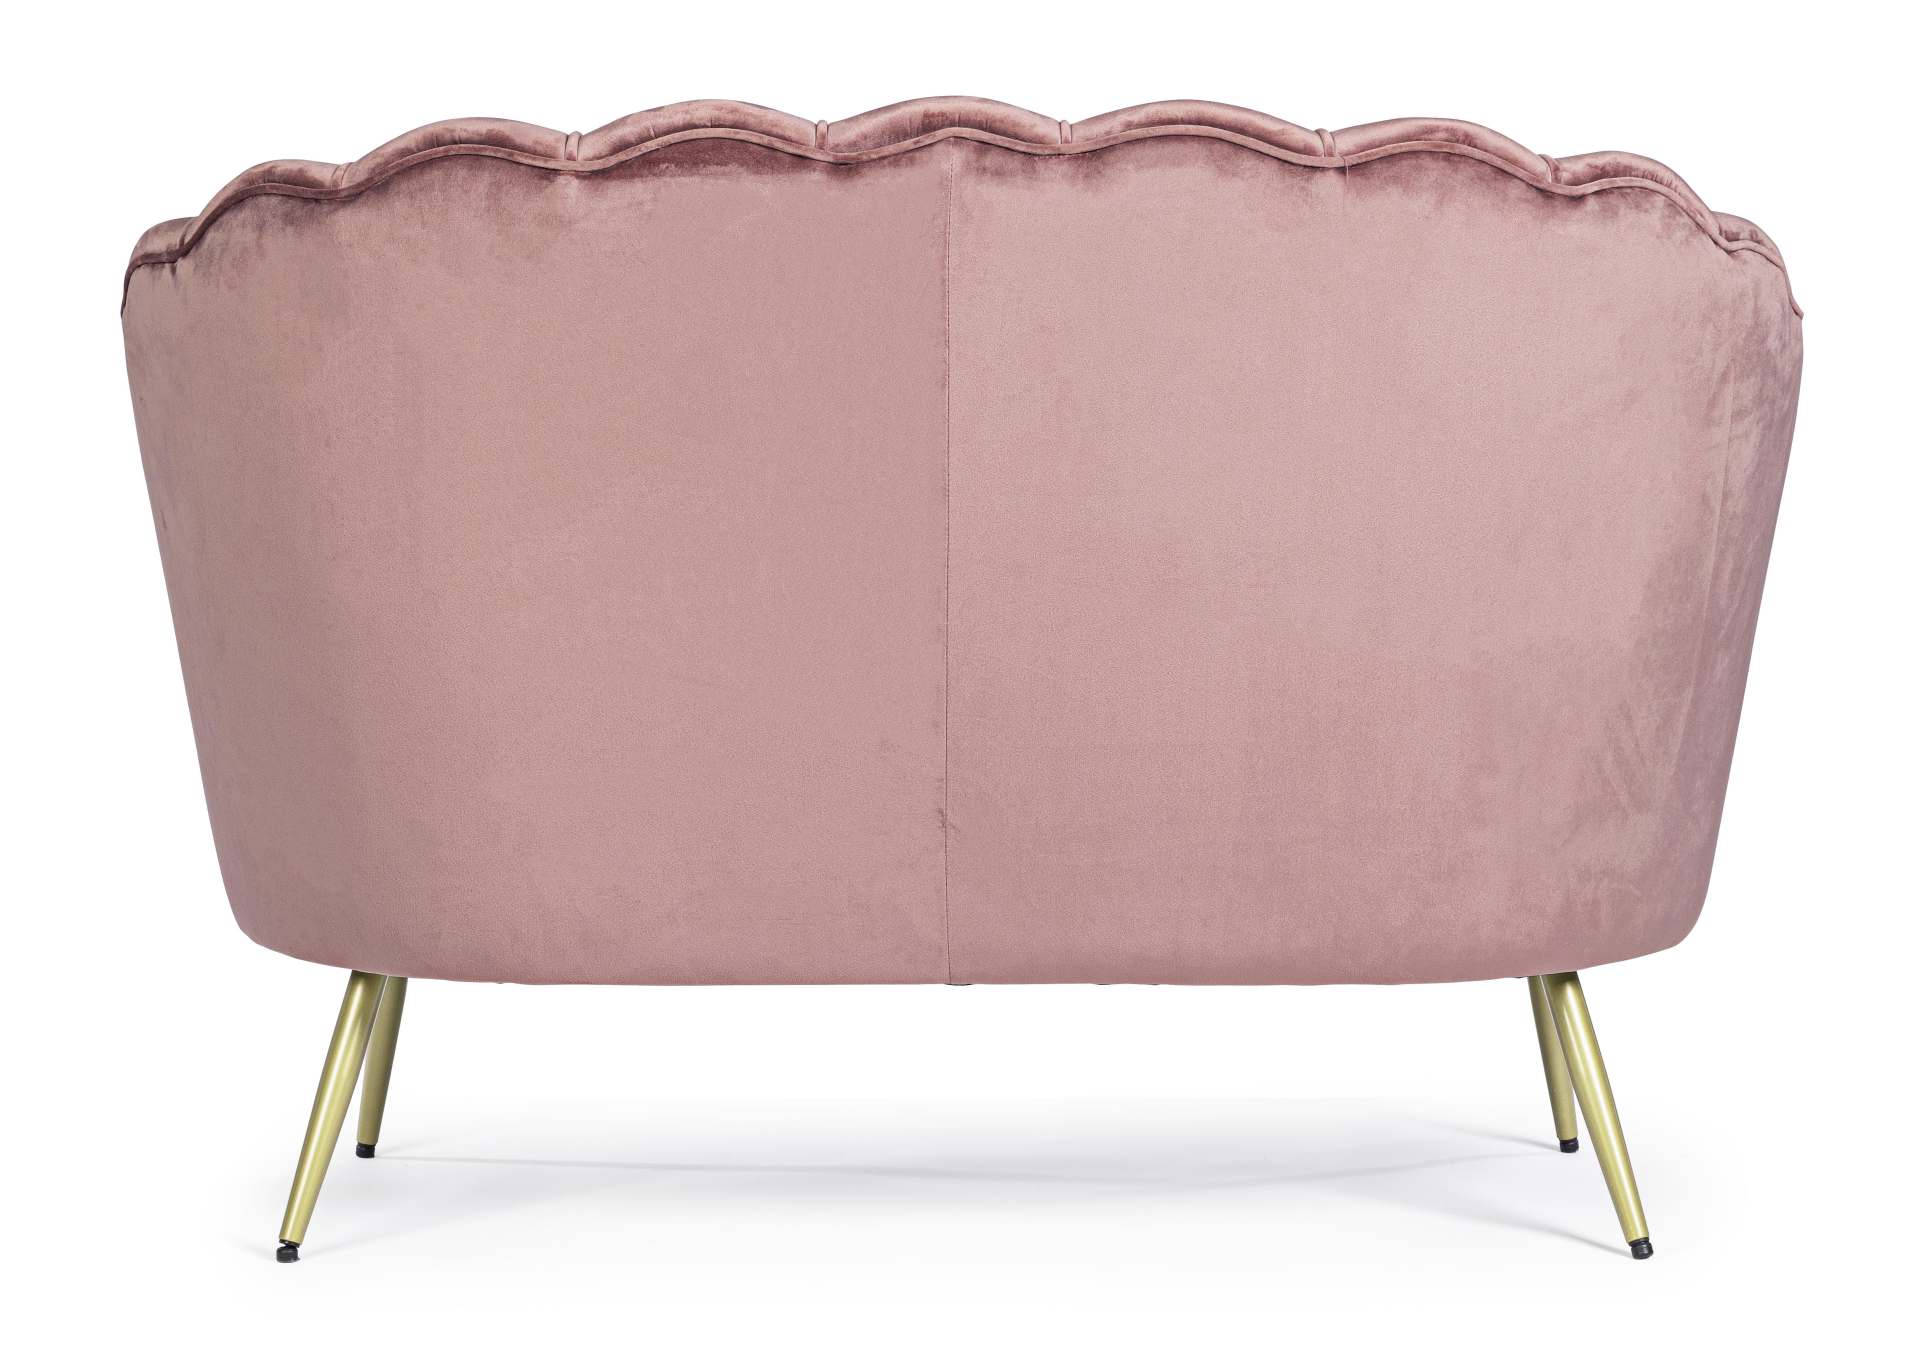 Das Sofa Giliola überzeugt mit seinem modernen Design. Gefertigt wurde es aus Stoff in Samt-Optik, welcher einen rosa Farbton besitzt. Das Gestell ist aus Metall und hat eine goldene Farbe. Das Sofa ist in der Ausführung als 2-Sitzer. Die Breite beträgt 1